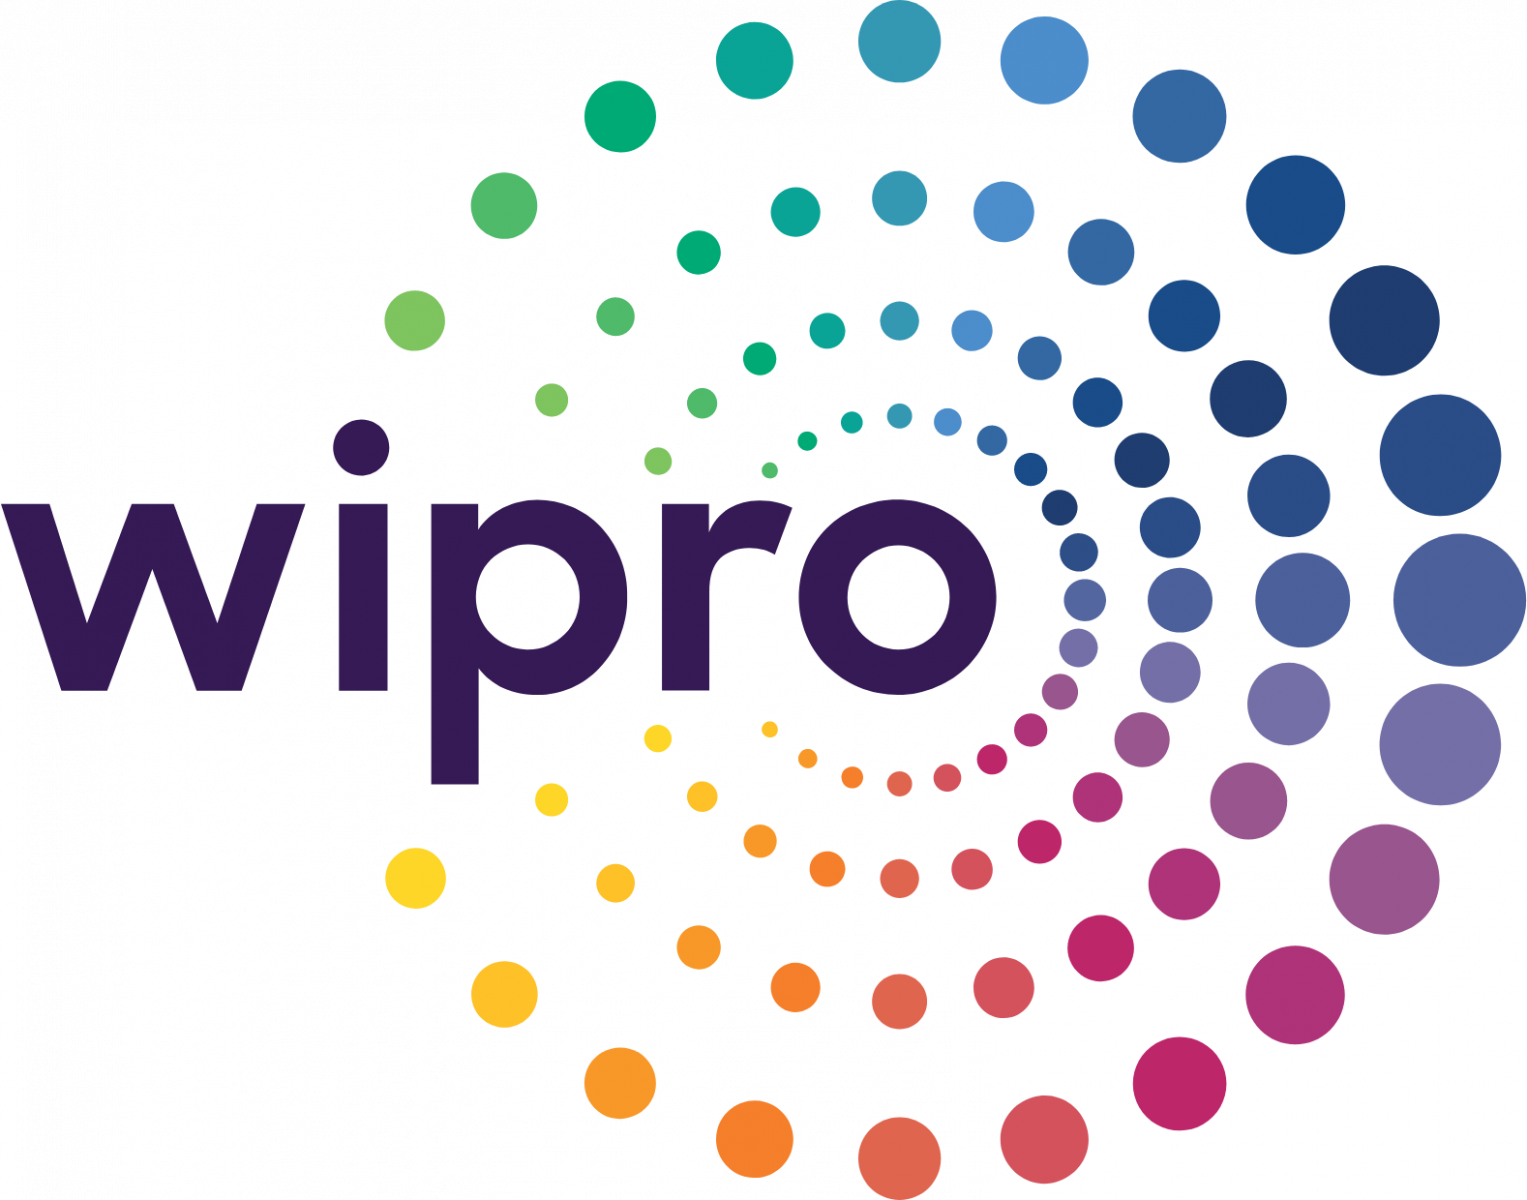 Wipro it companies in Guwahati